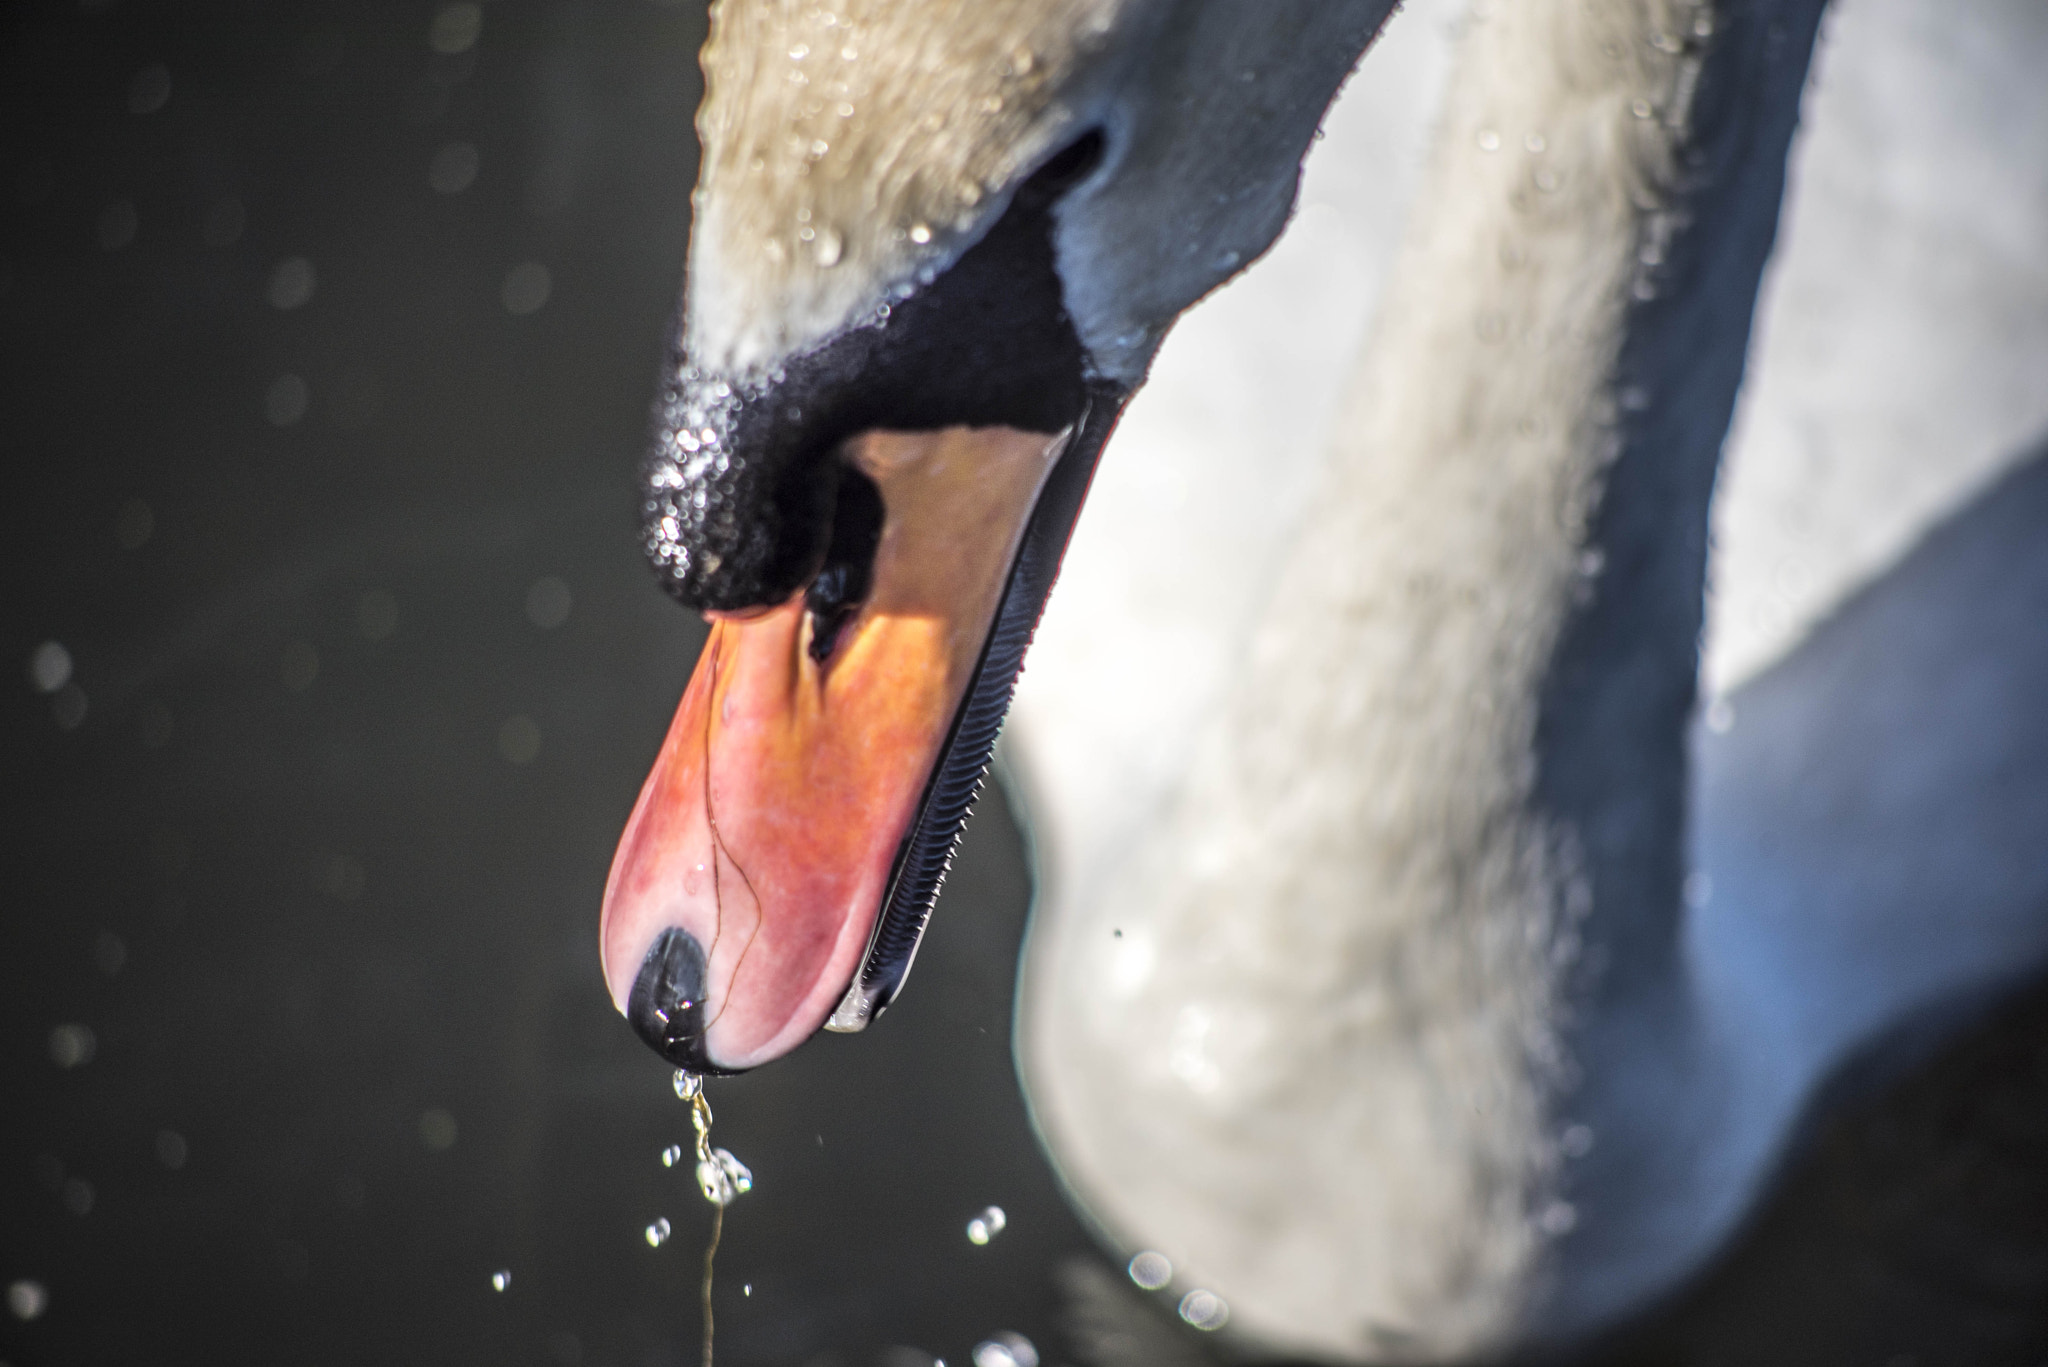 Nikon D750 + AF Nikkor 70-210mm f/4-5.6 sample photo. Like water off a swan's beak photography